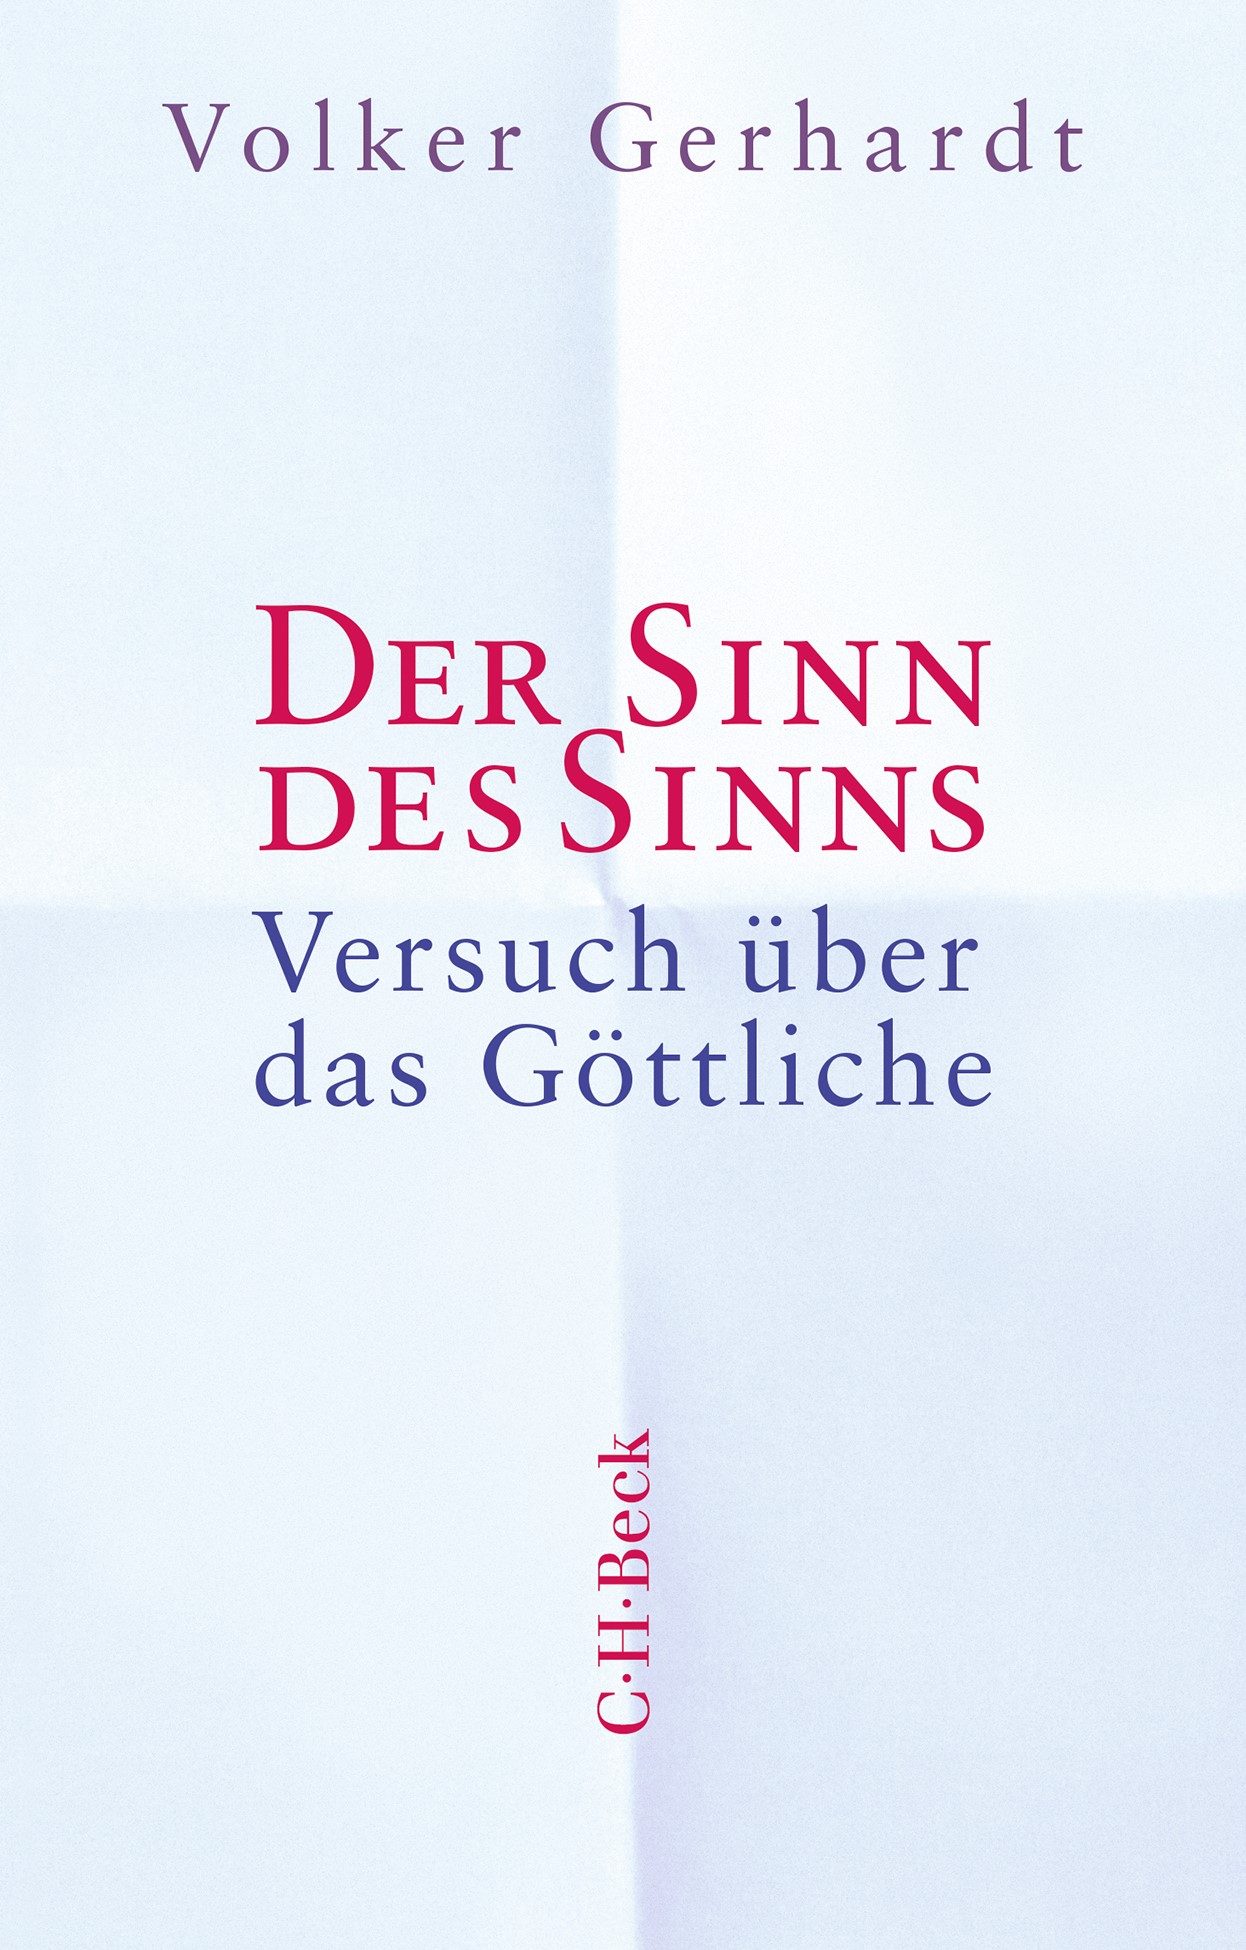 Cover: Gerhardt, Volker, Der Sinn des Sinns